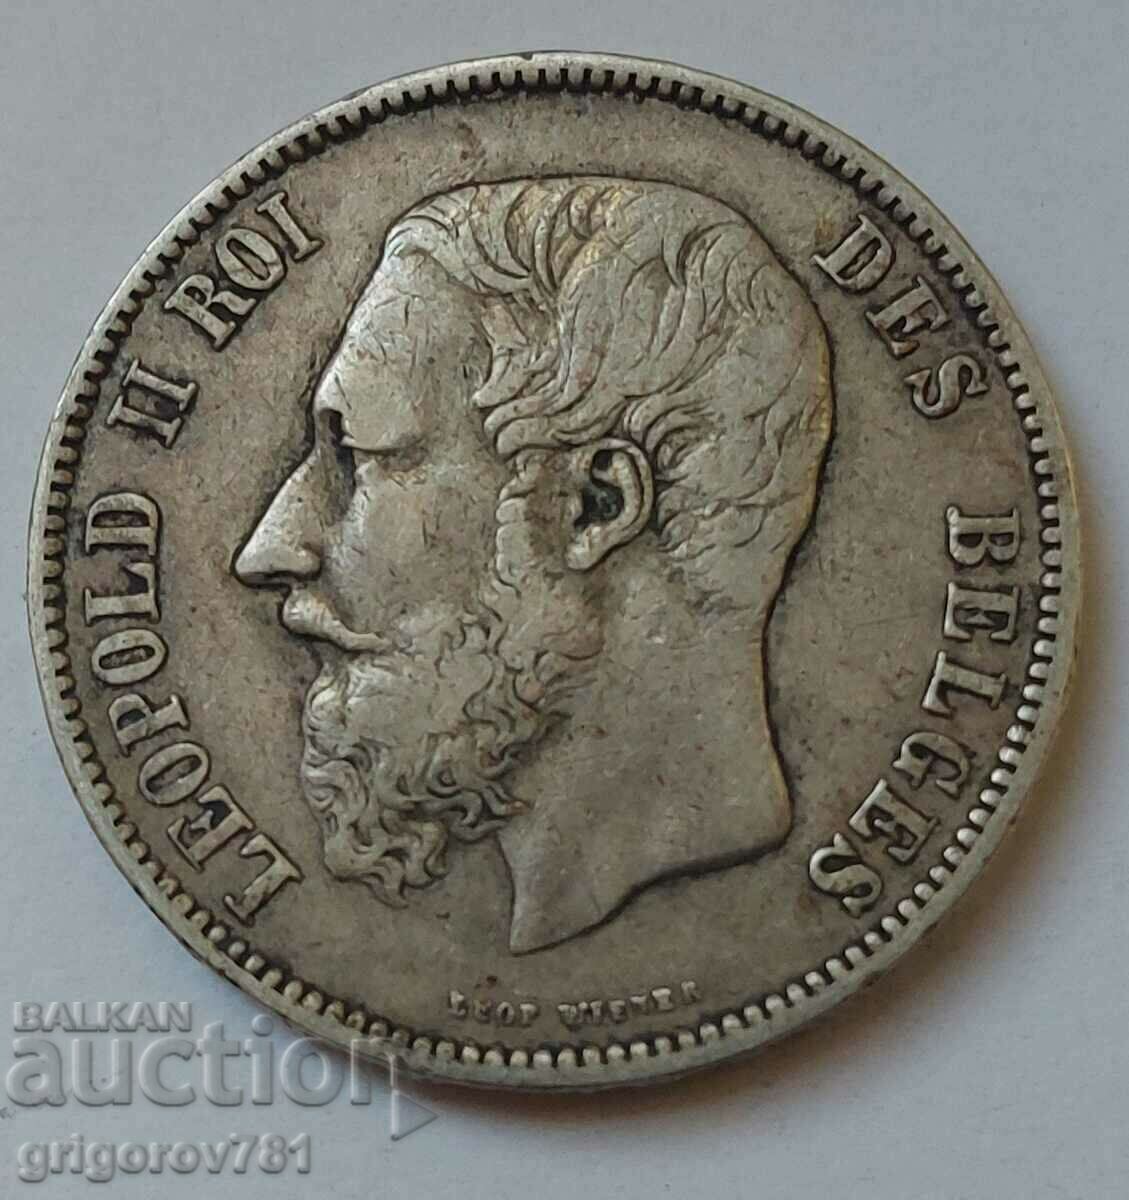 5 Francs Silver Belgium 1873 - Silver Coin #221